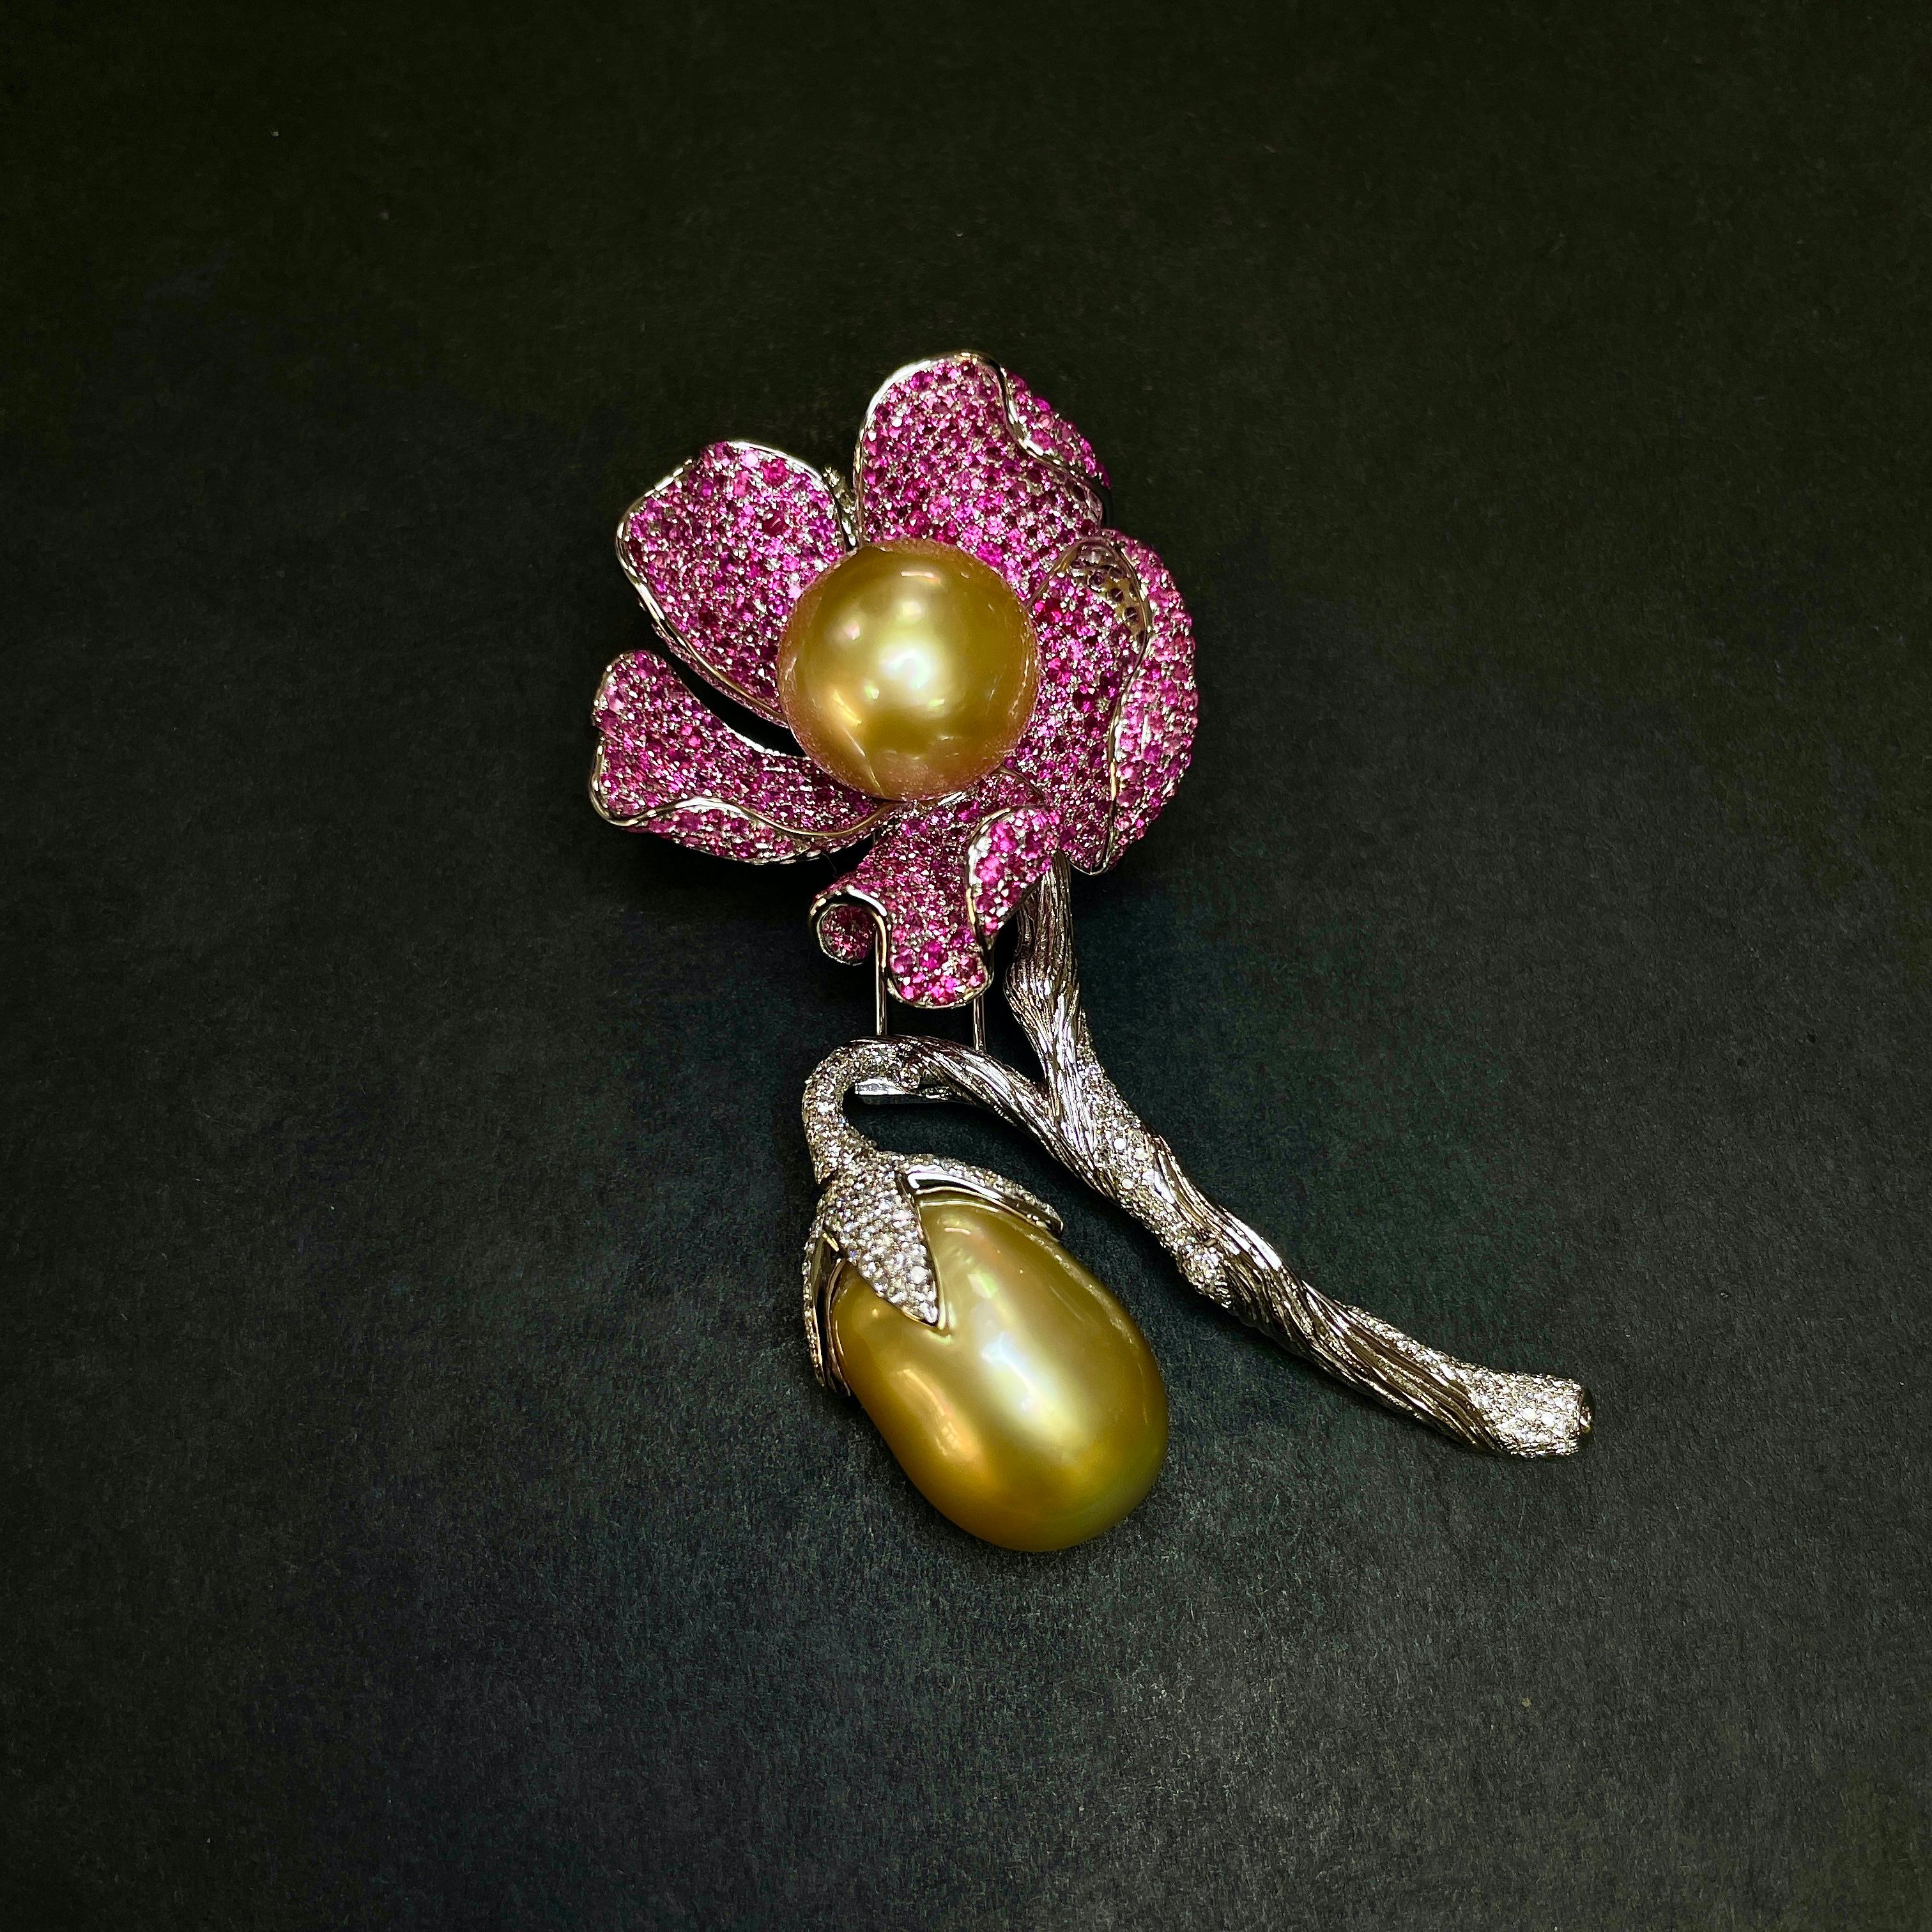 Eine fruchtige und blühende Brosche mit goldener Südseeperle, rosafarbenem Saphir und Diamantbesatz. Die runde goldene Südseeperle ist von 5 mit rosa Saphiren besetzten Blütenblättern umgeben, während sich die Frucht vom Hauptstamm, auf dem die